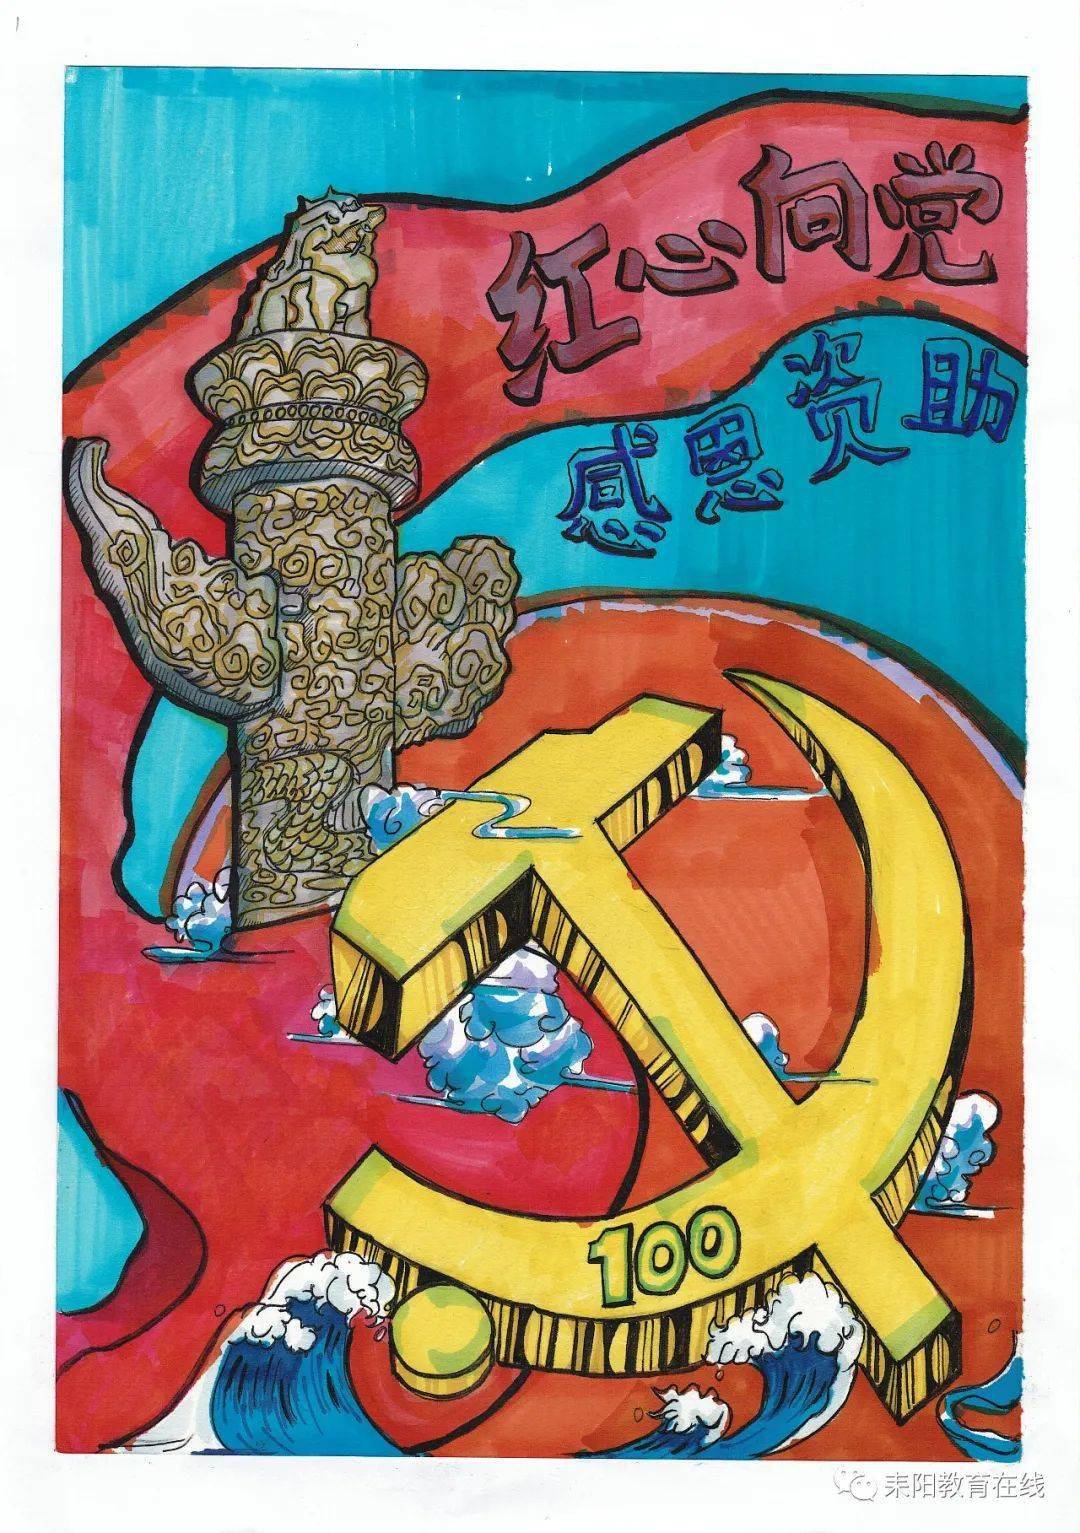 祥云代表着吉祥如意,突出主题"感恩资助",也寓意着在中国共产党的带领